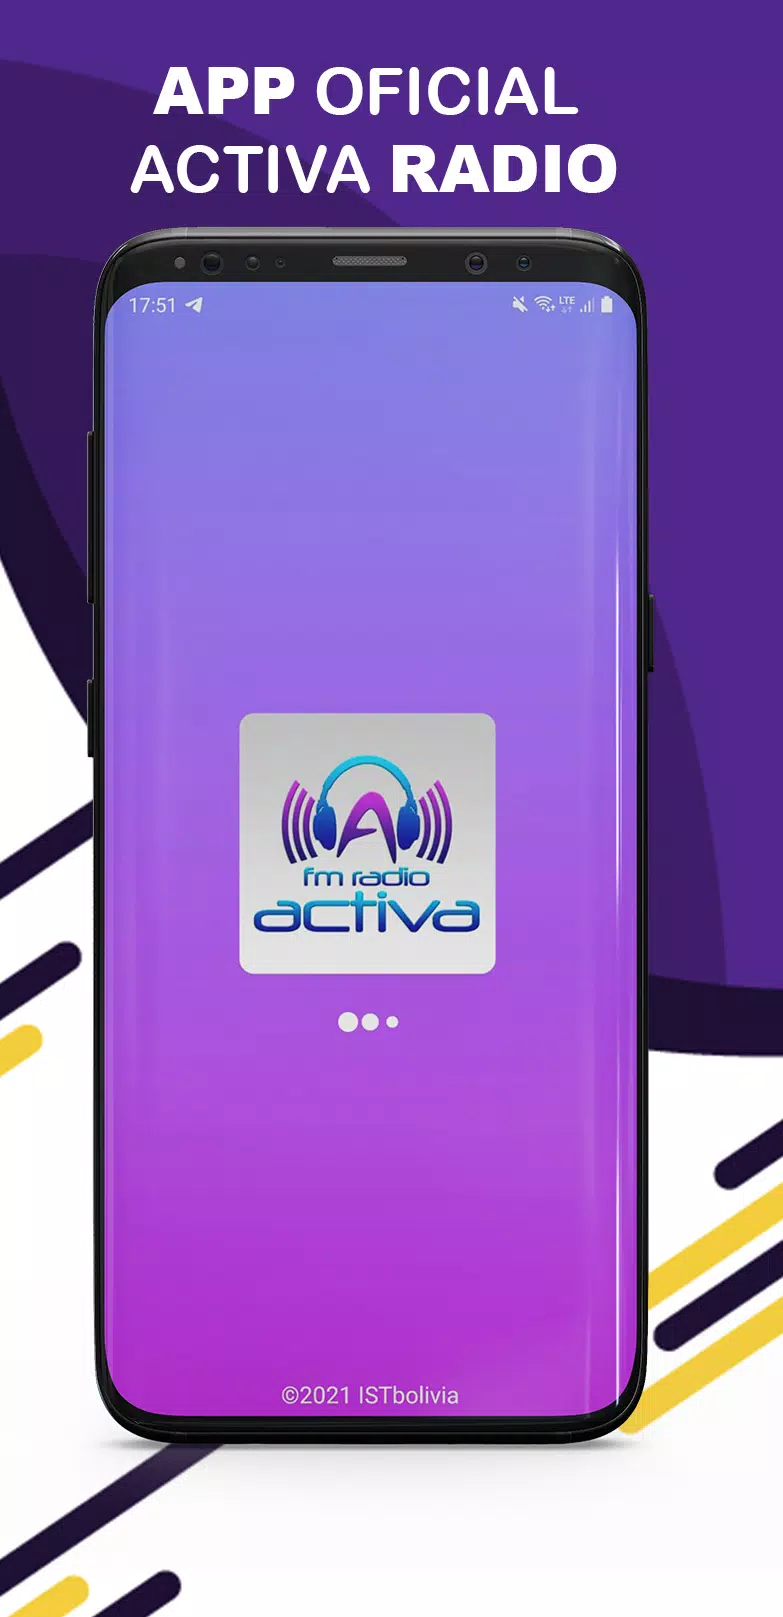 Descarga de APK de Radio Activa FM 98.2 para Android